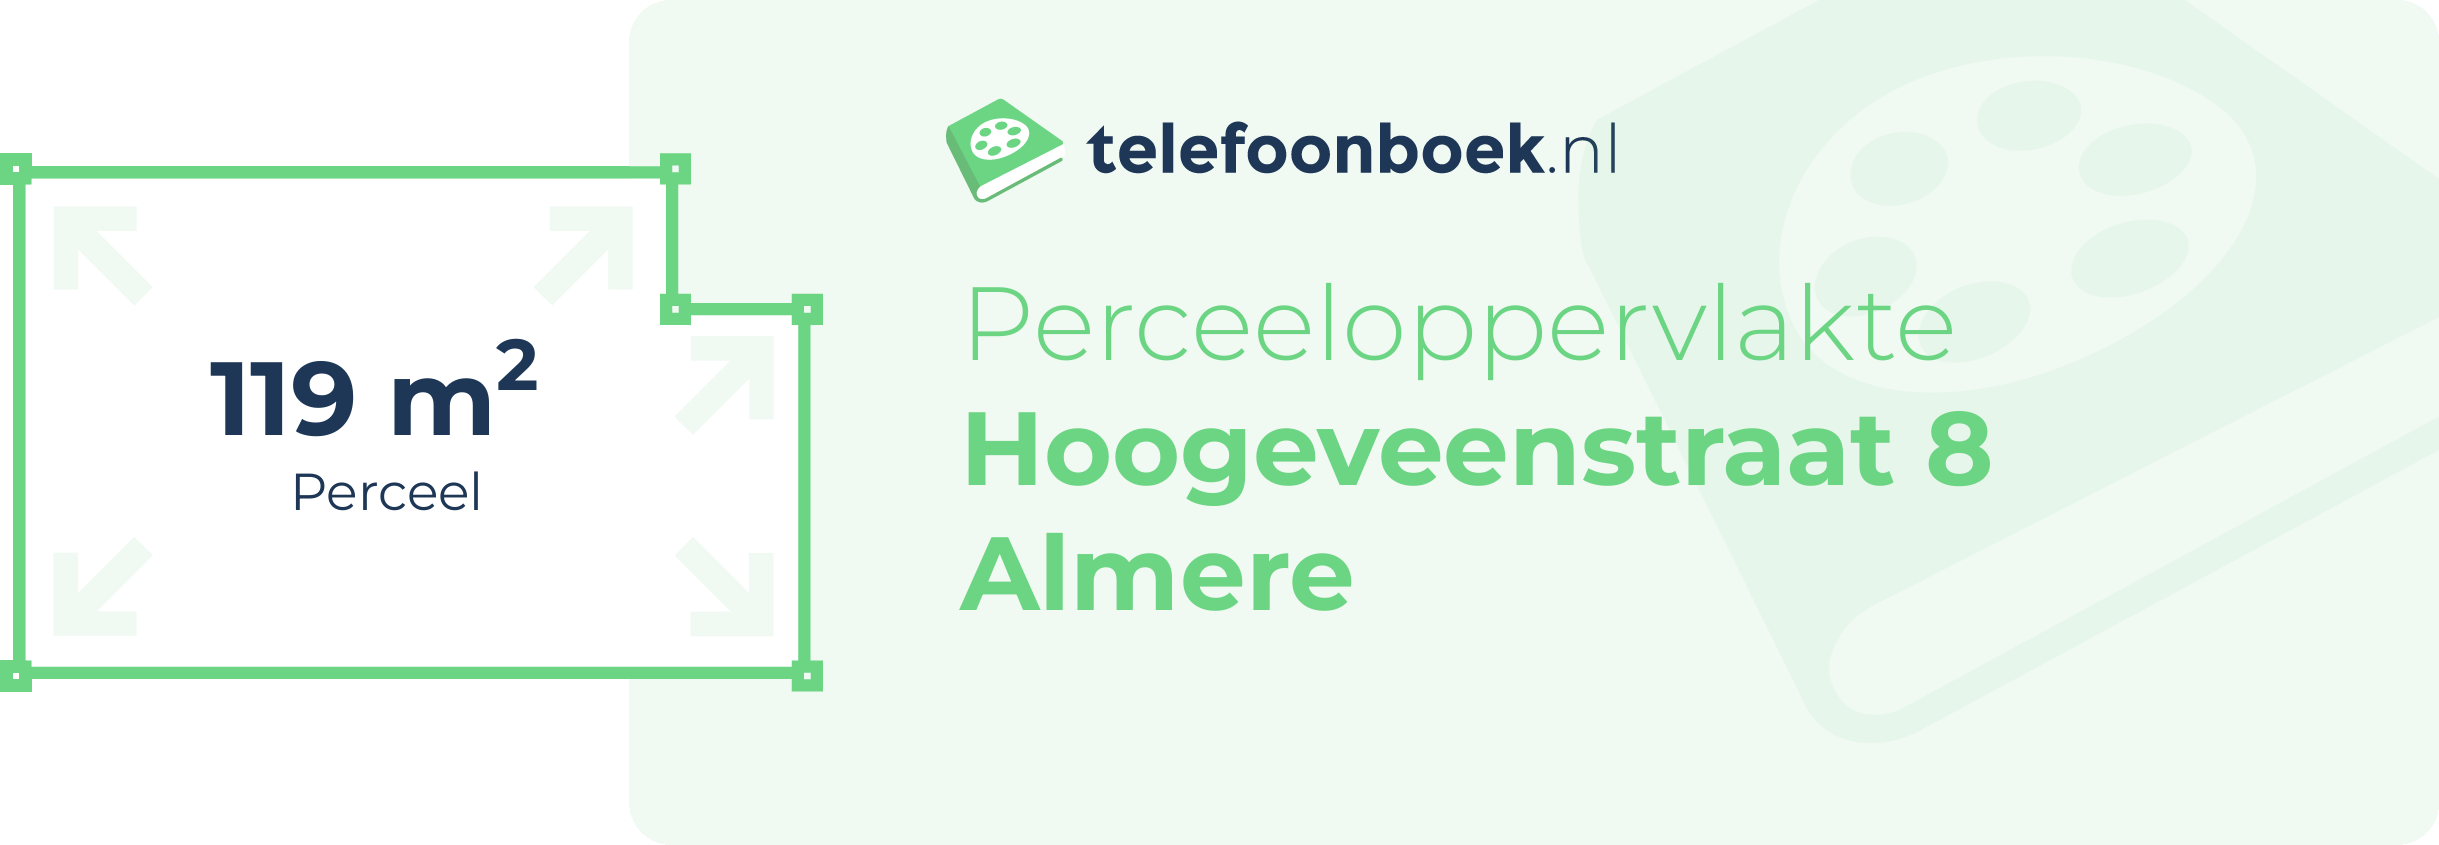 Perceeloppervlakte Hoogeveenstraat 8 Almere